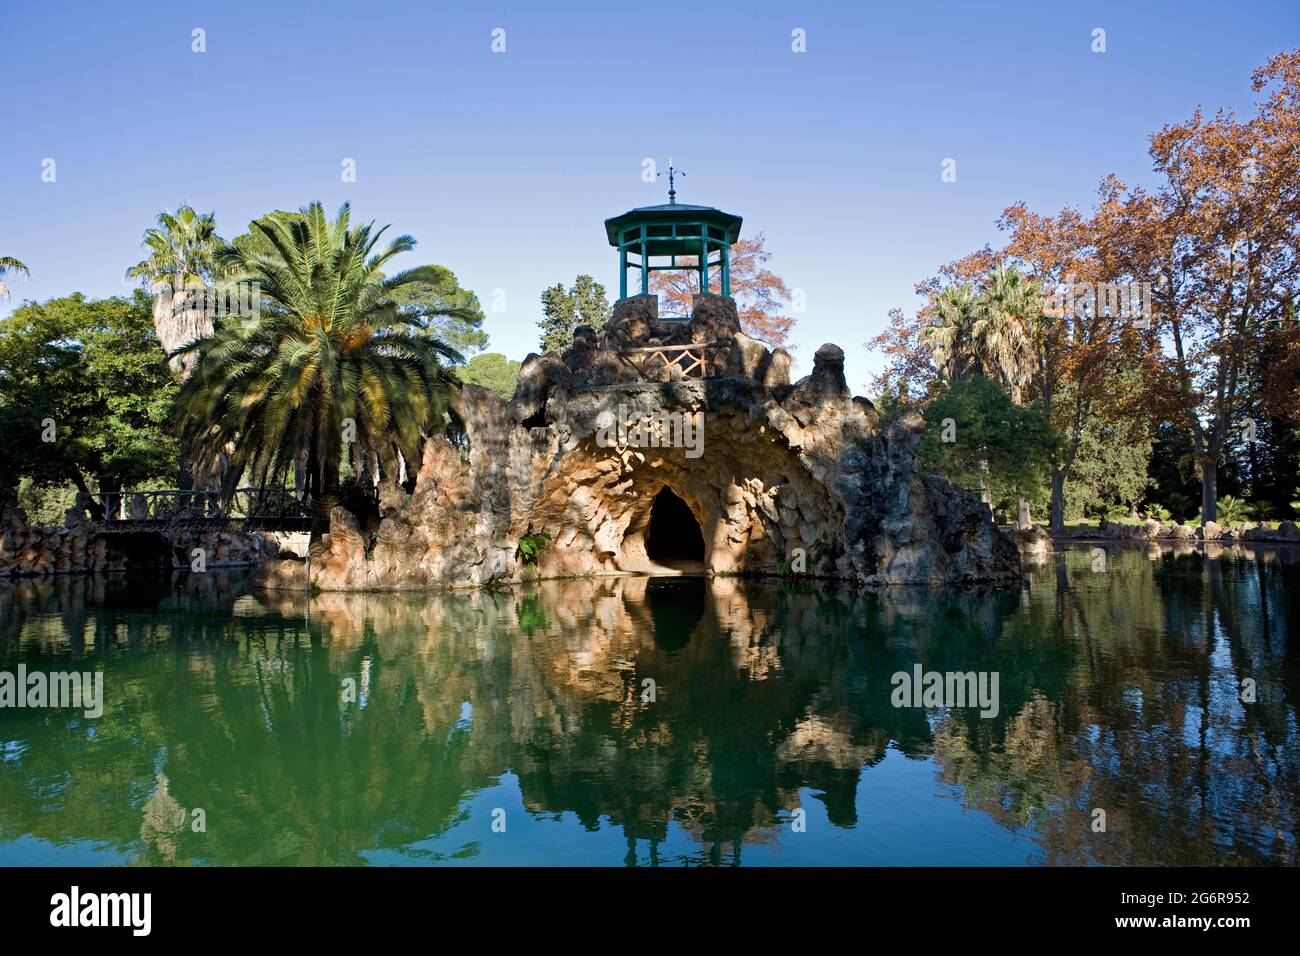 Palau del Parc de Samà, Tarragona, Spain Stock Photo